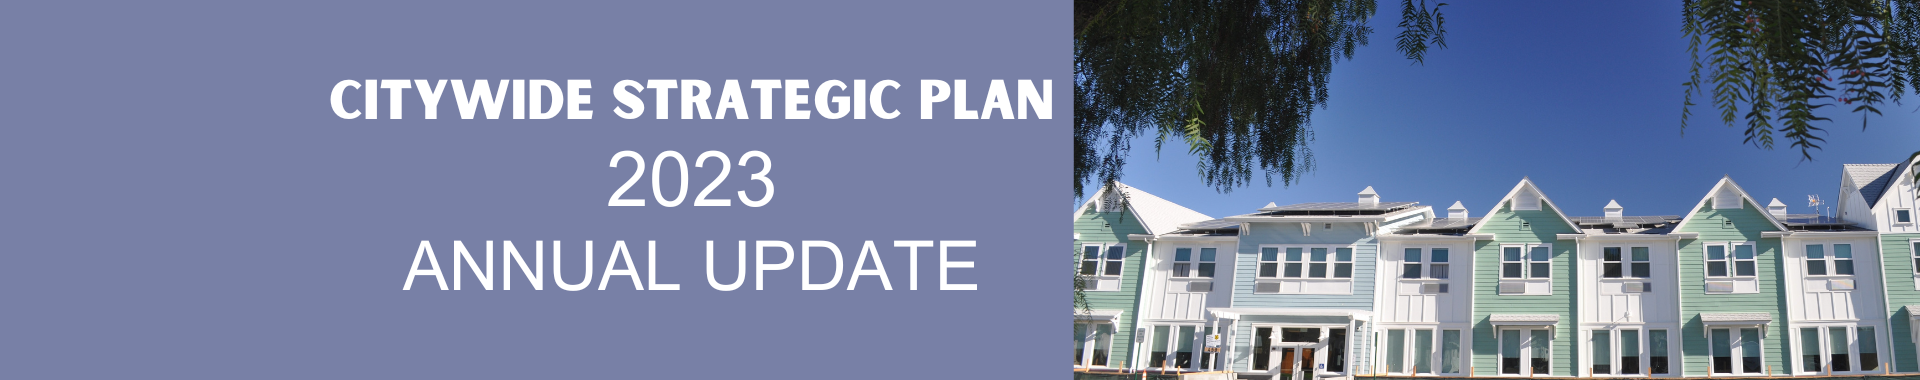 Strategic Plan Annual Update 2023